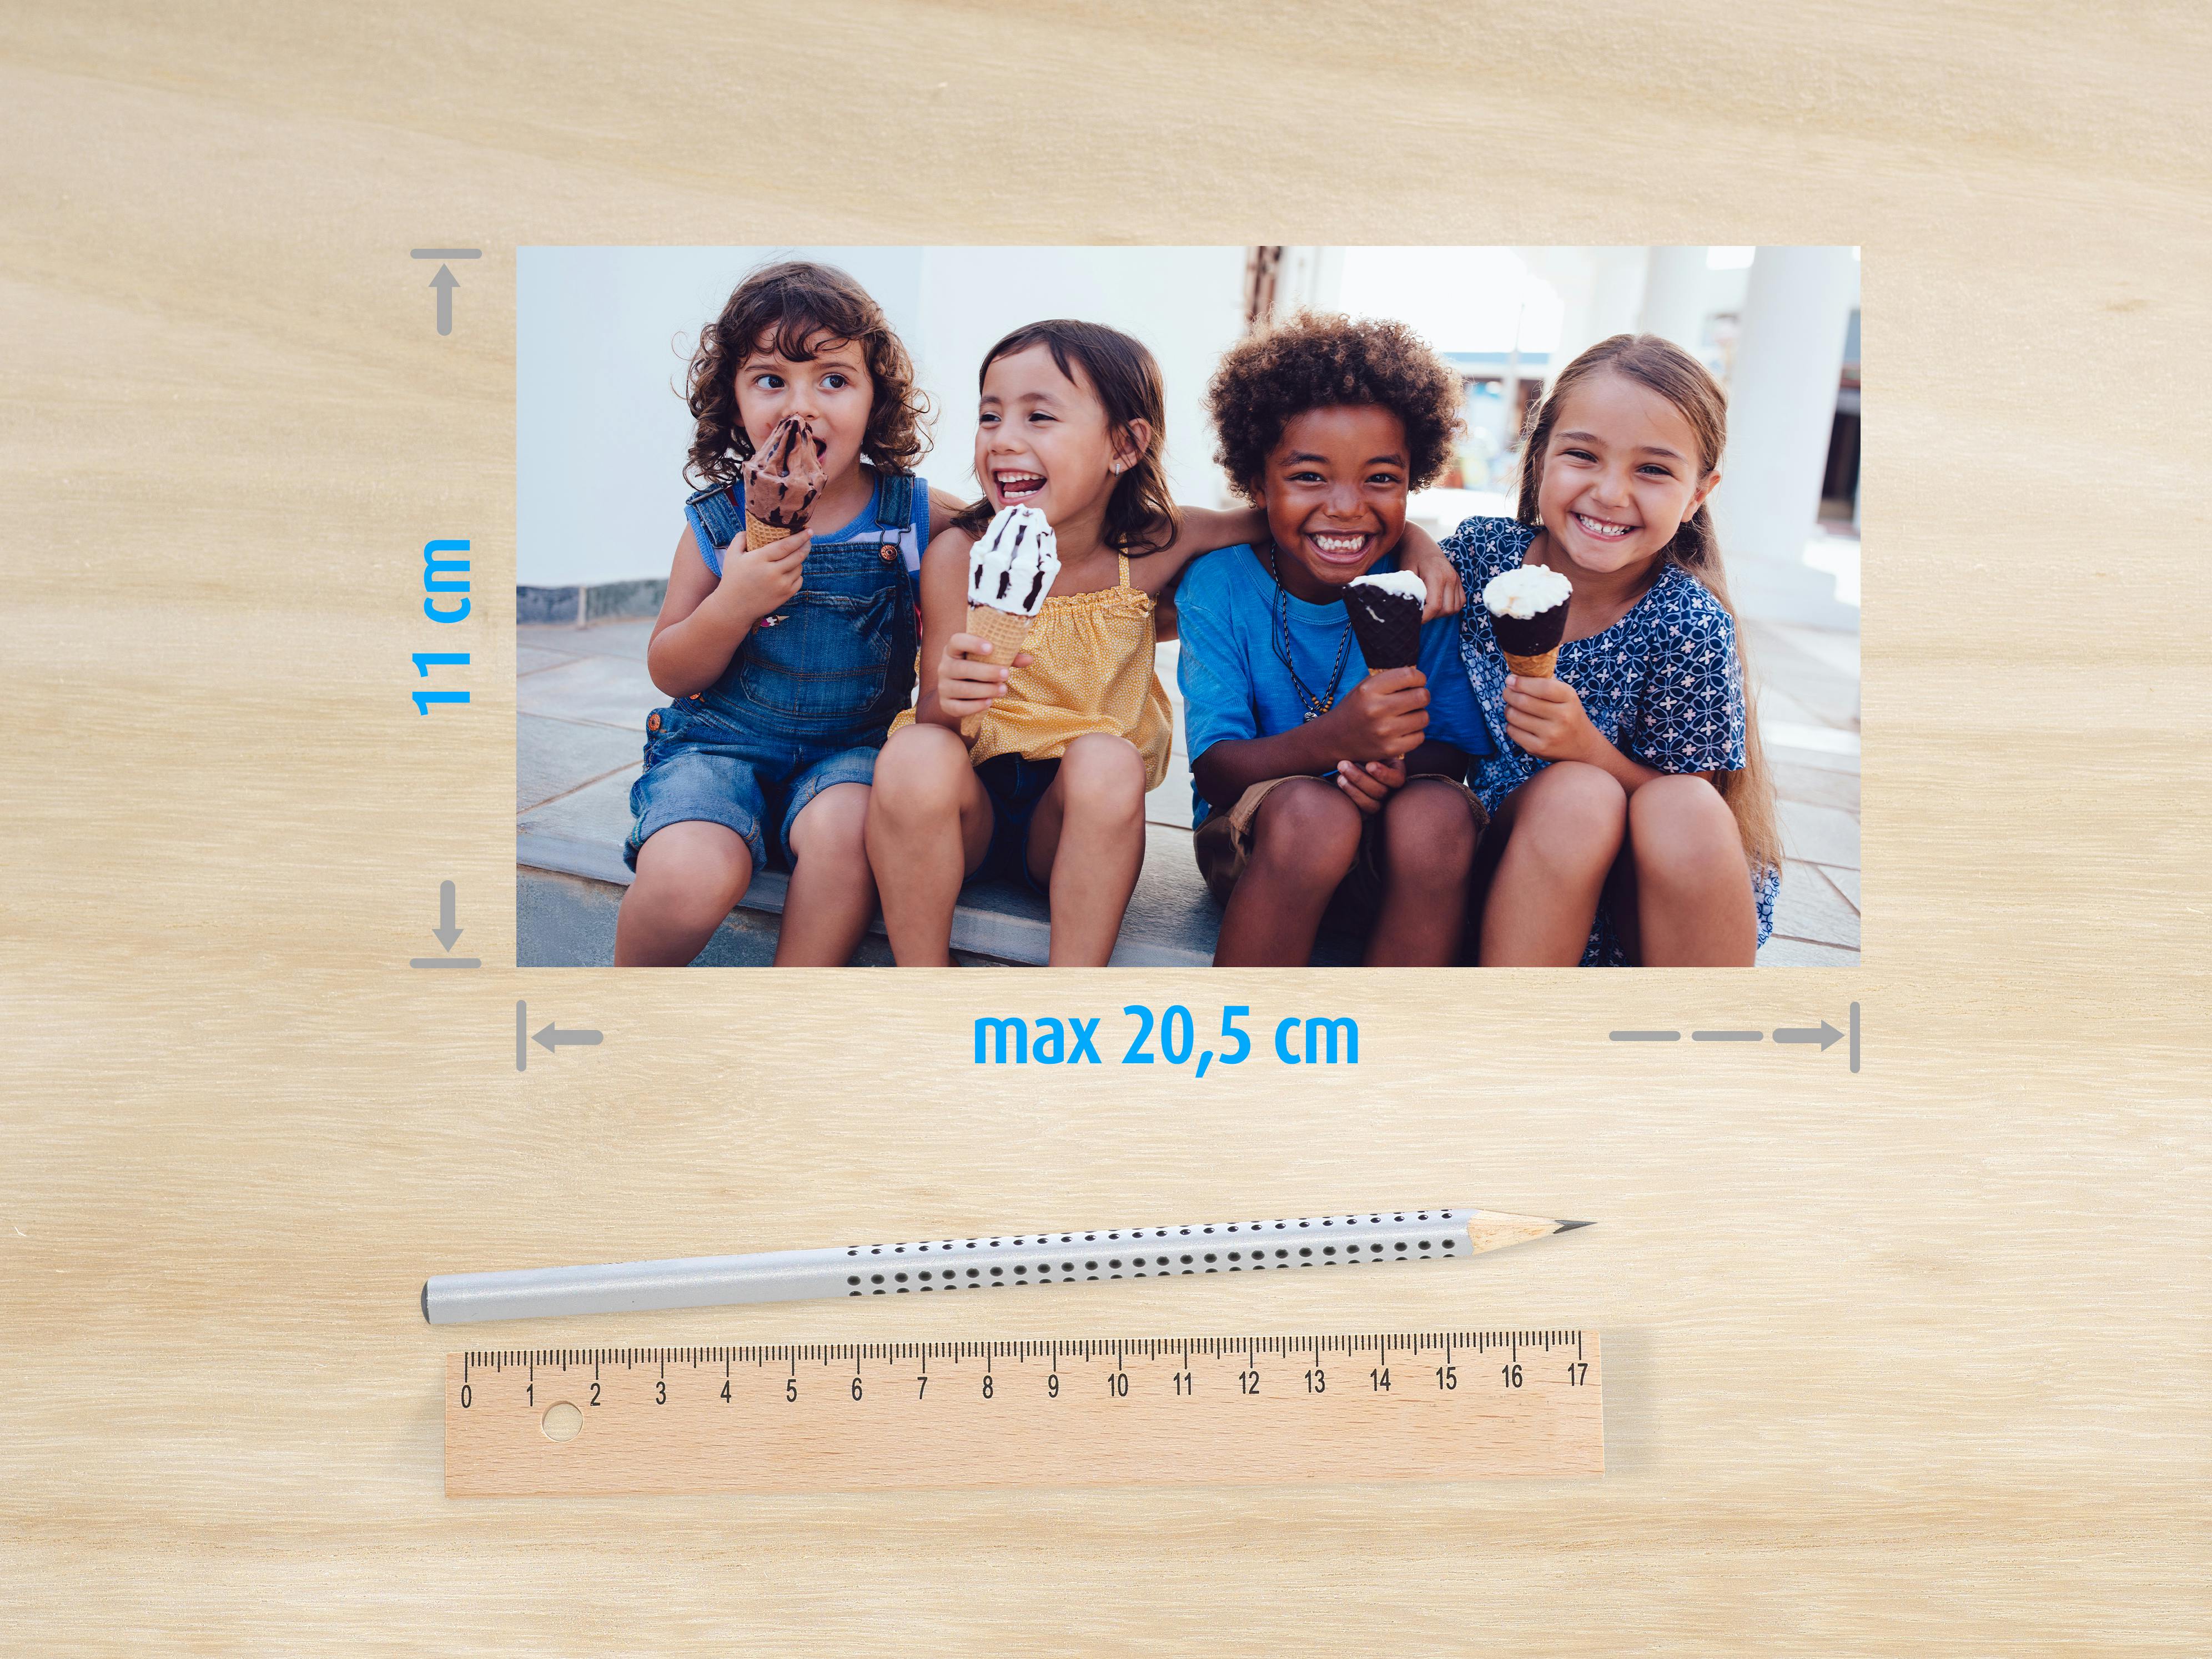 Tirage de 4 enfants sur une table dans les dimensions 11x20,5cm